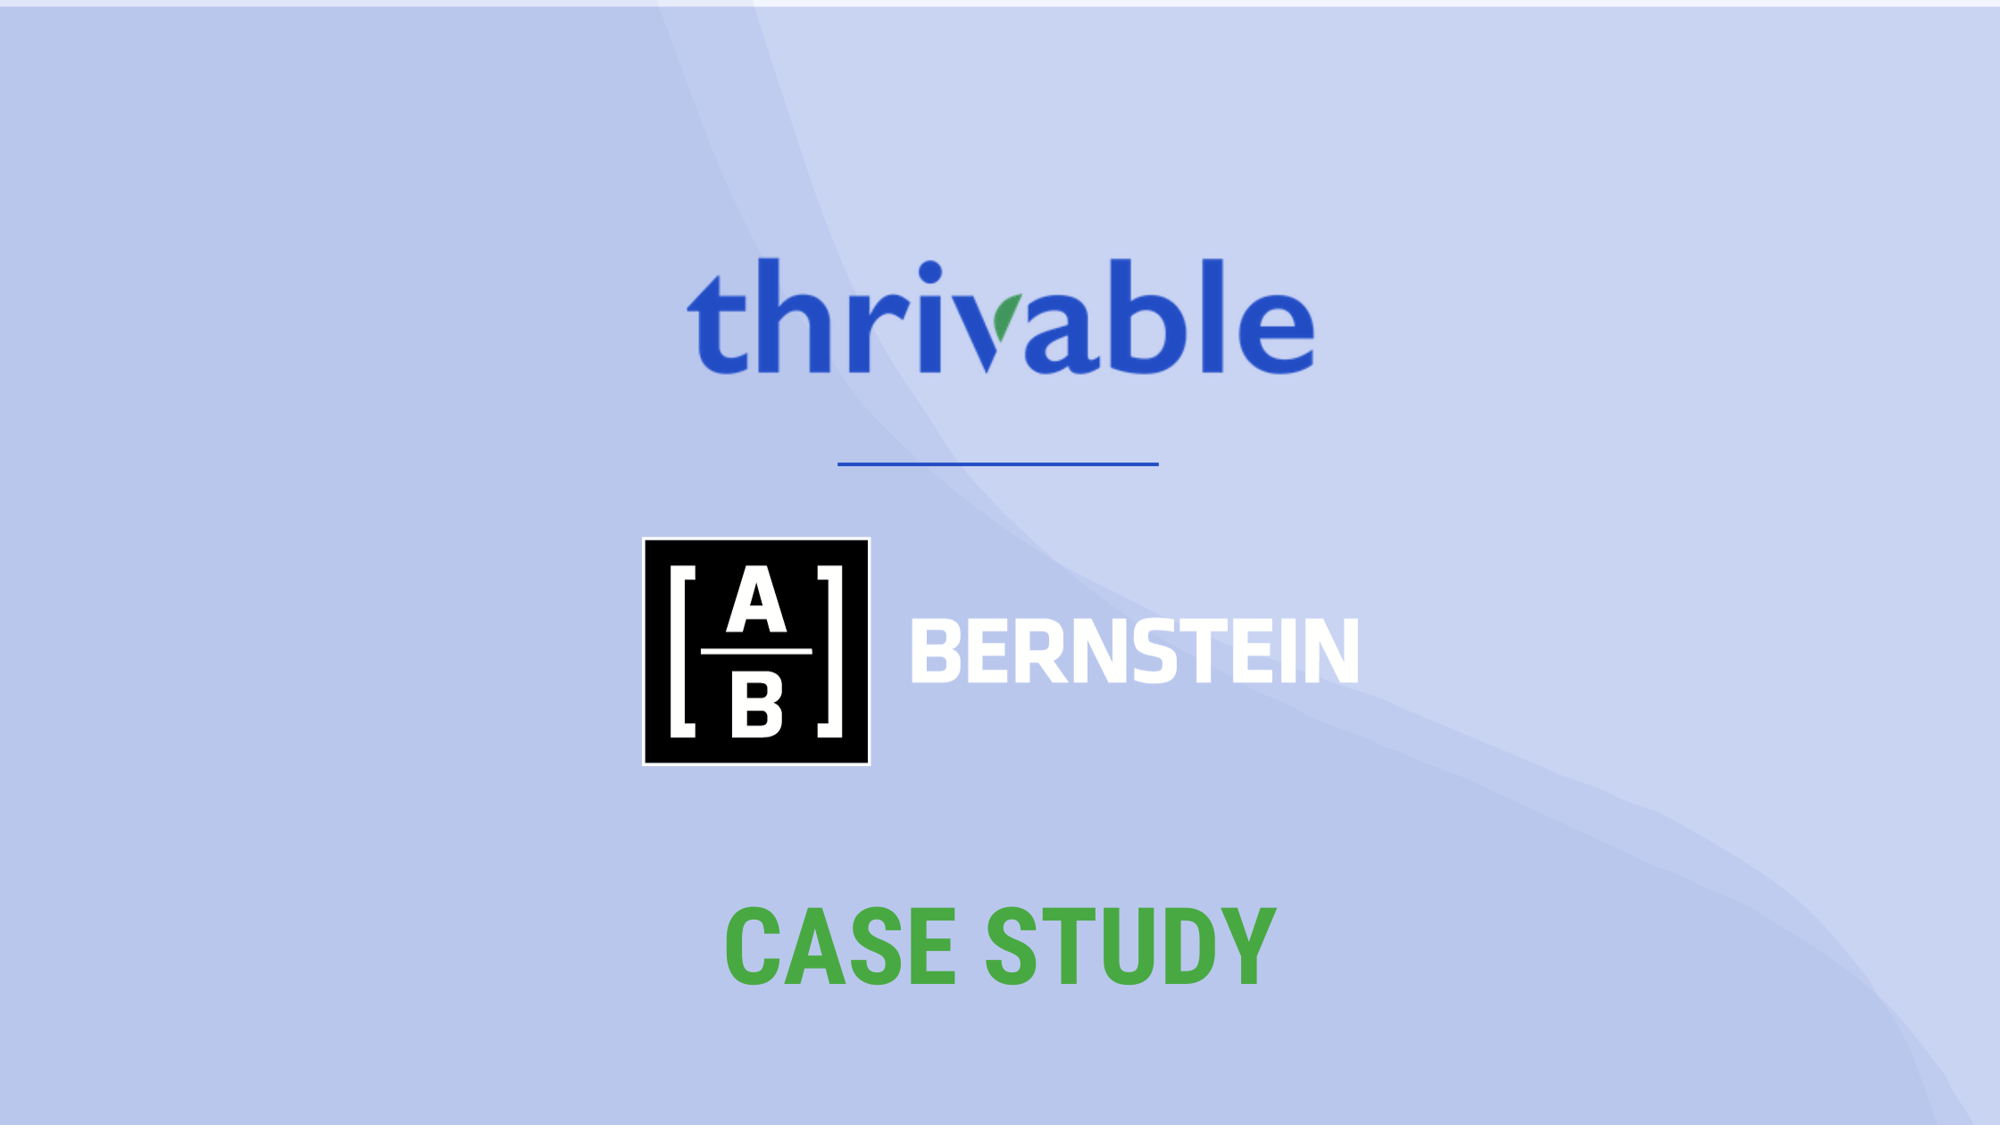 bernstein case study hero stacked